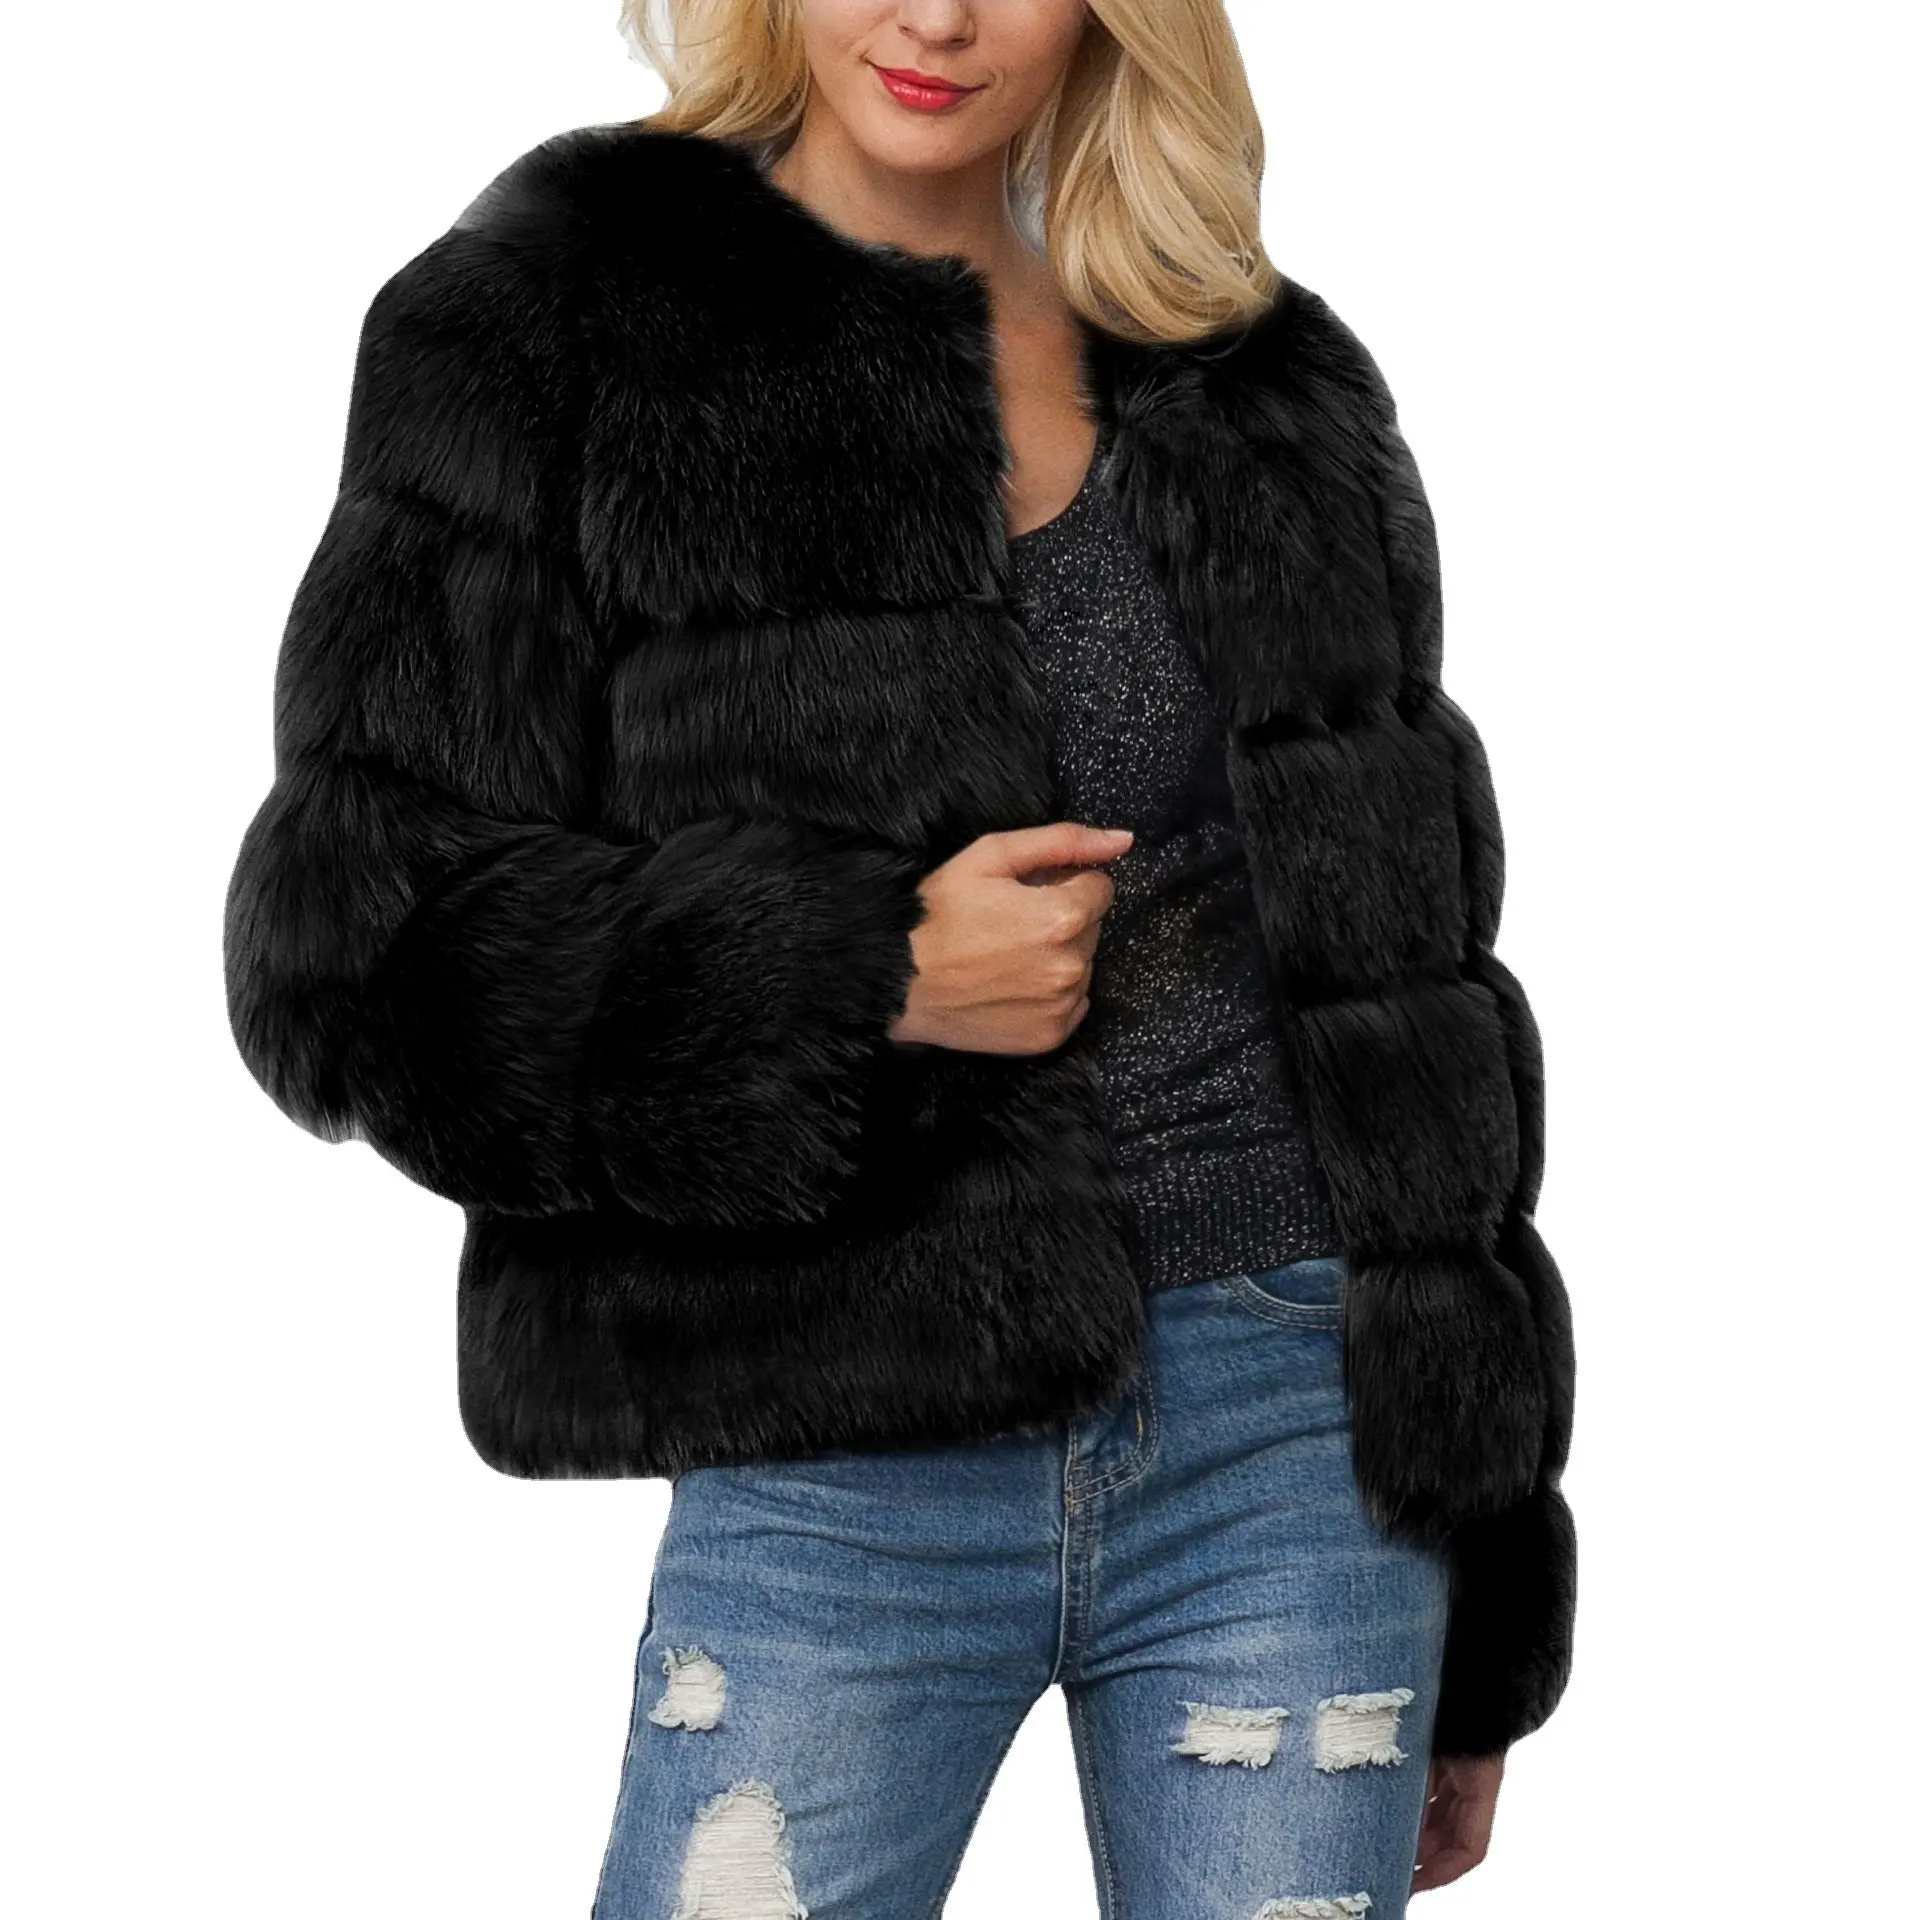 Kırpılmış kış ceket ceket kadınlar için gerçek tilki kürk ceket Hood ile moda kısa stil tilki kürk ceket bayan için